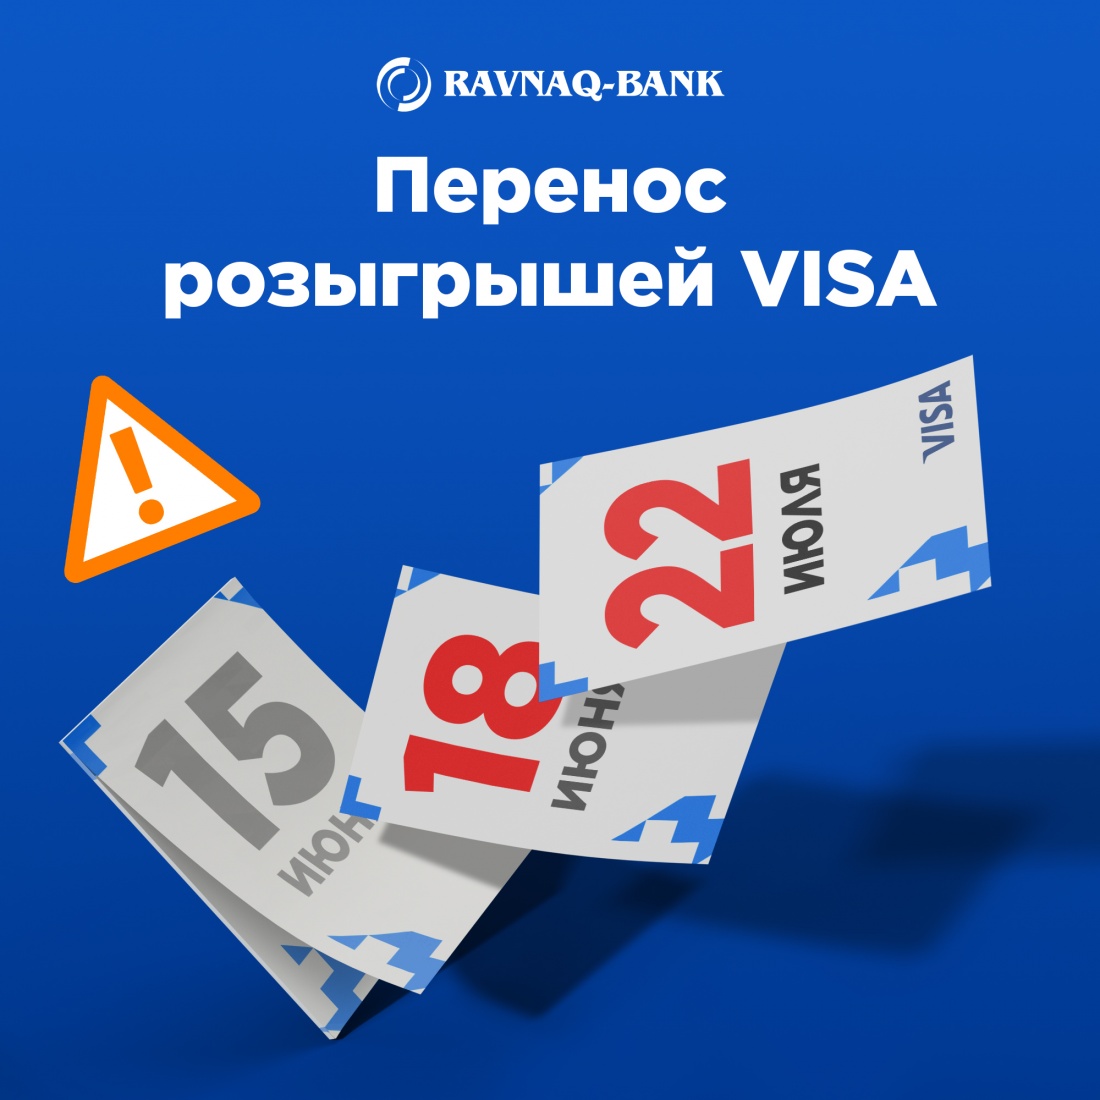 Уважаемые участники Акции “Выиграй с Visa”! 